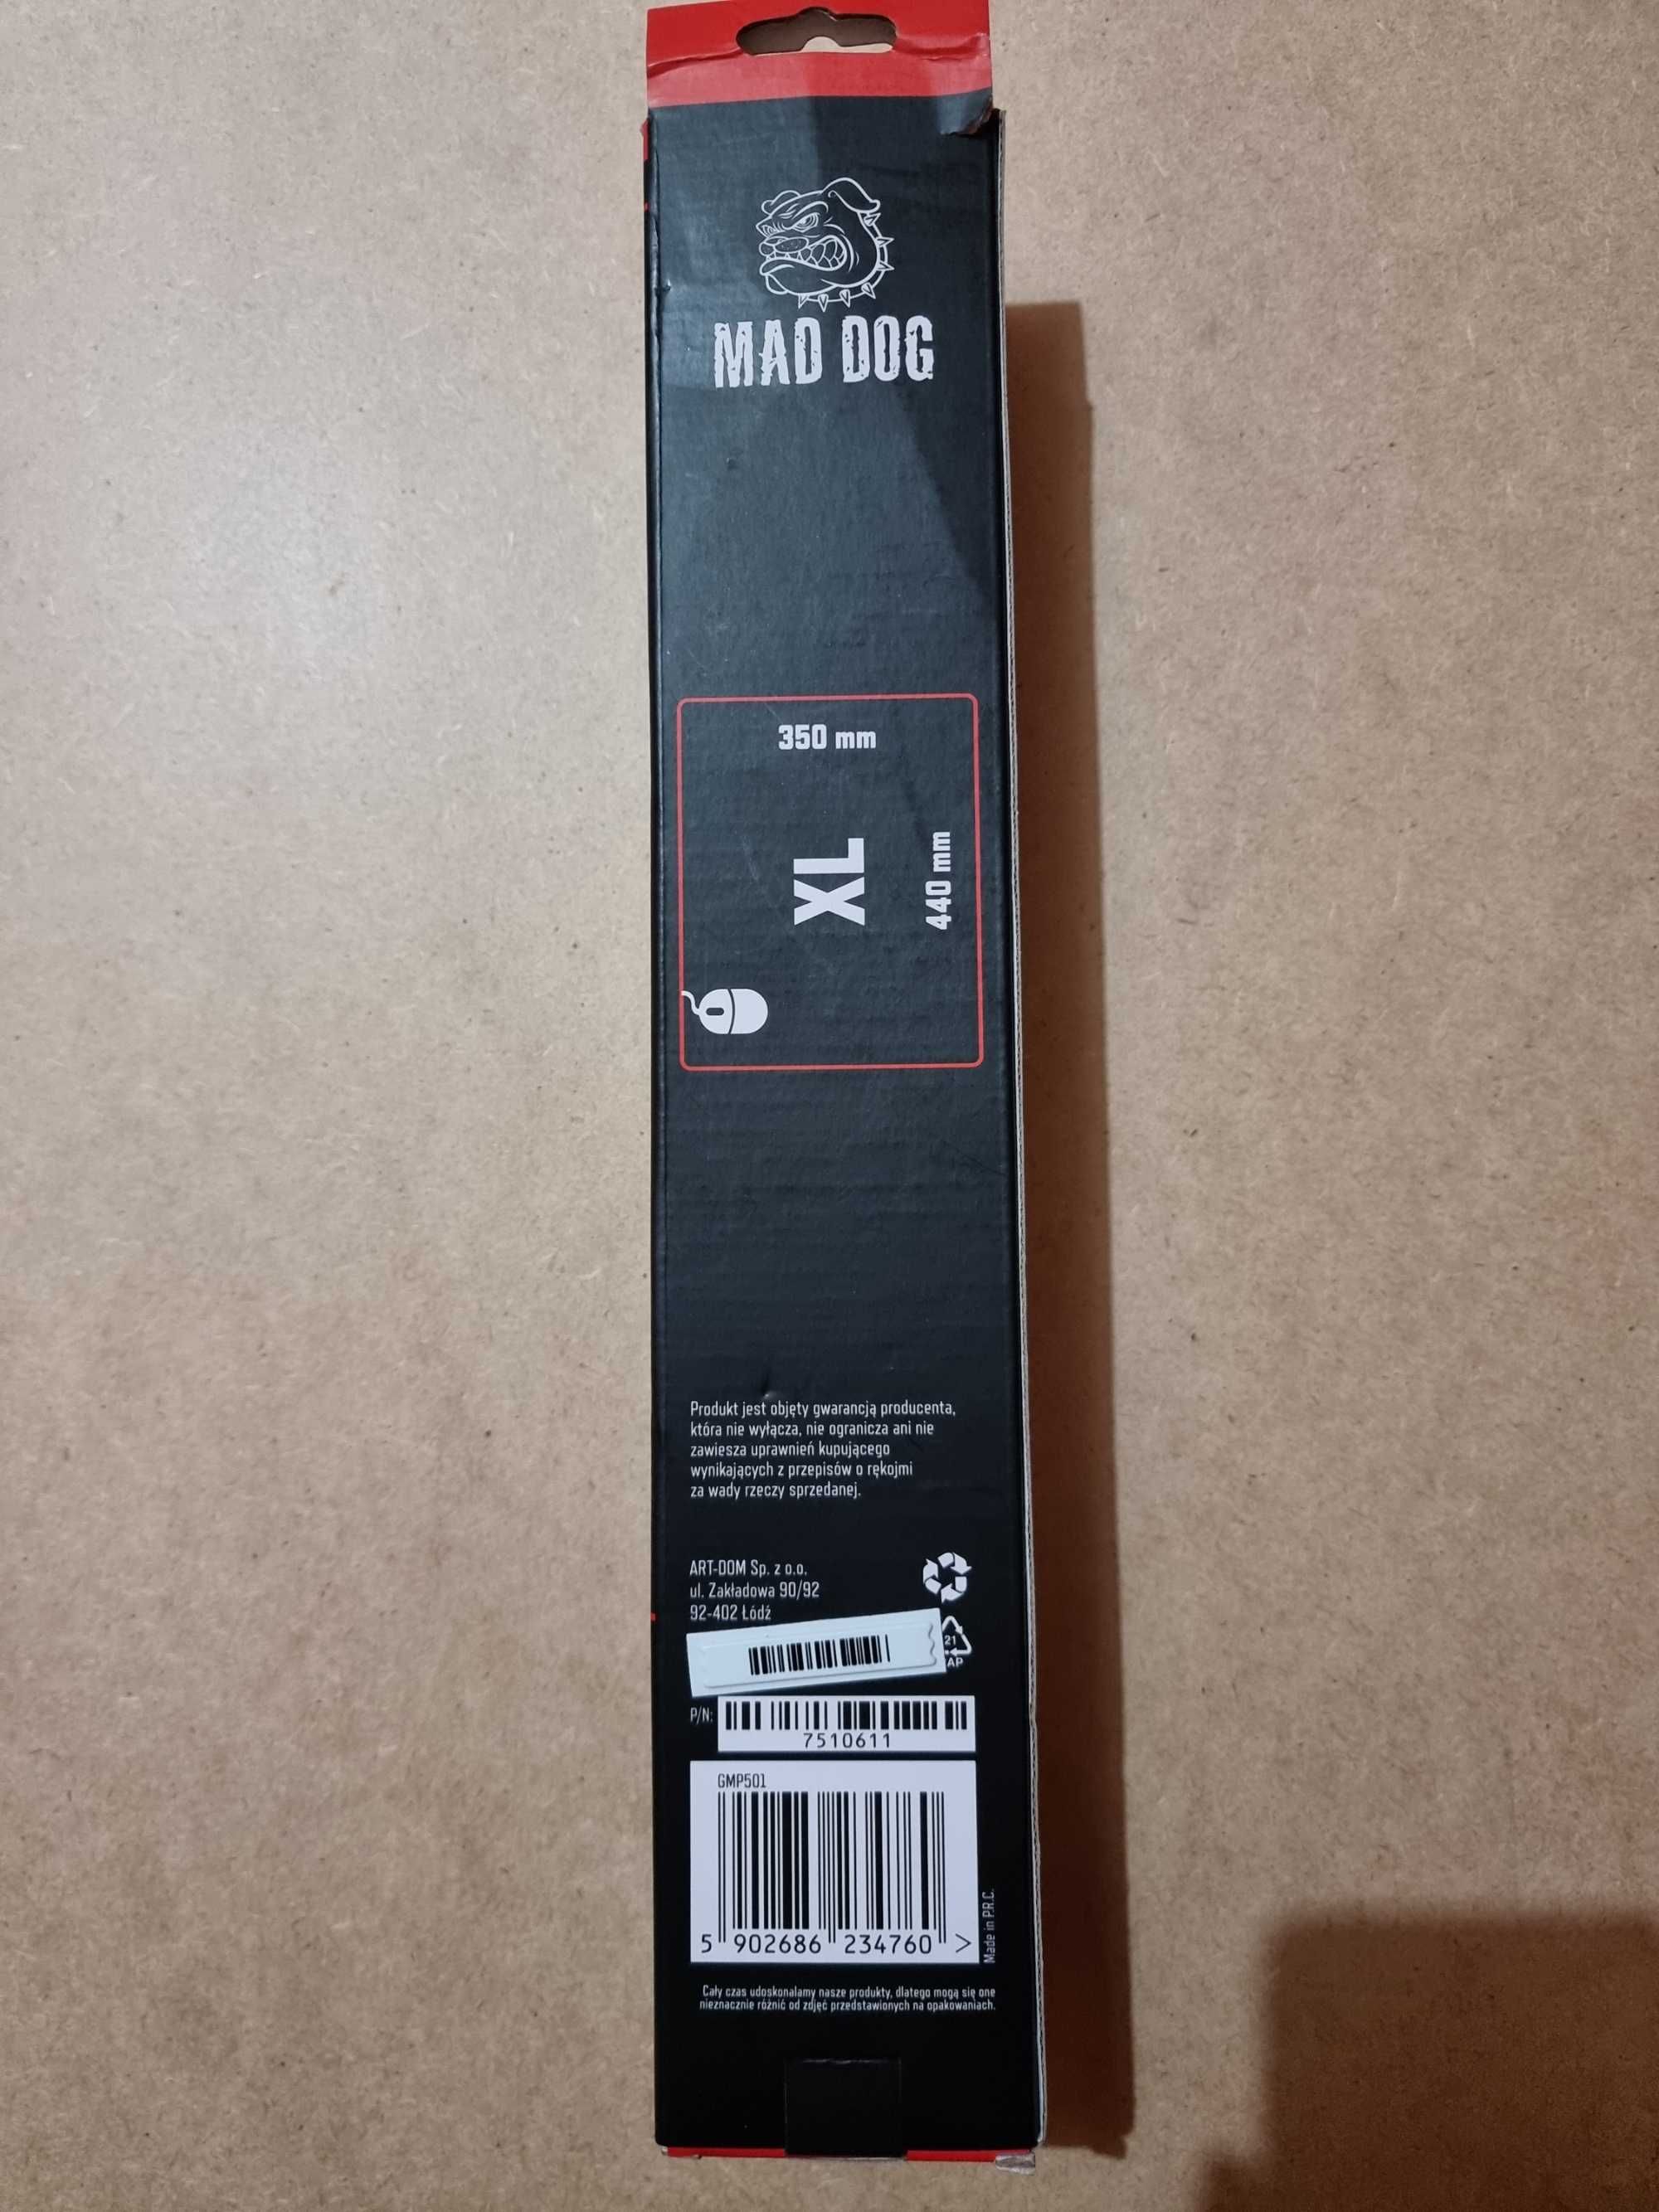 Podkładka Pod Mysz MAD DOG XL, 440mm x 350mm.